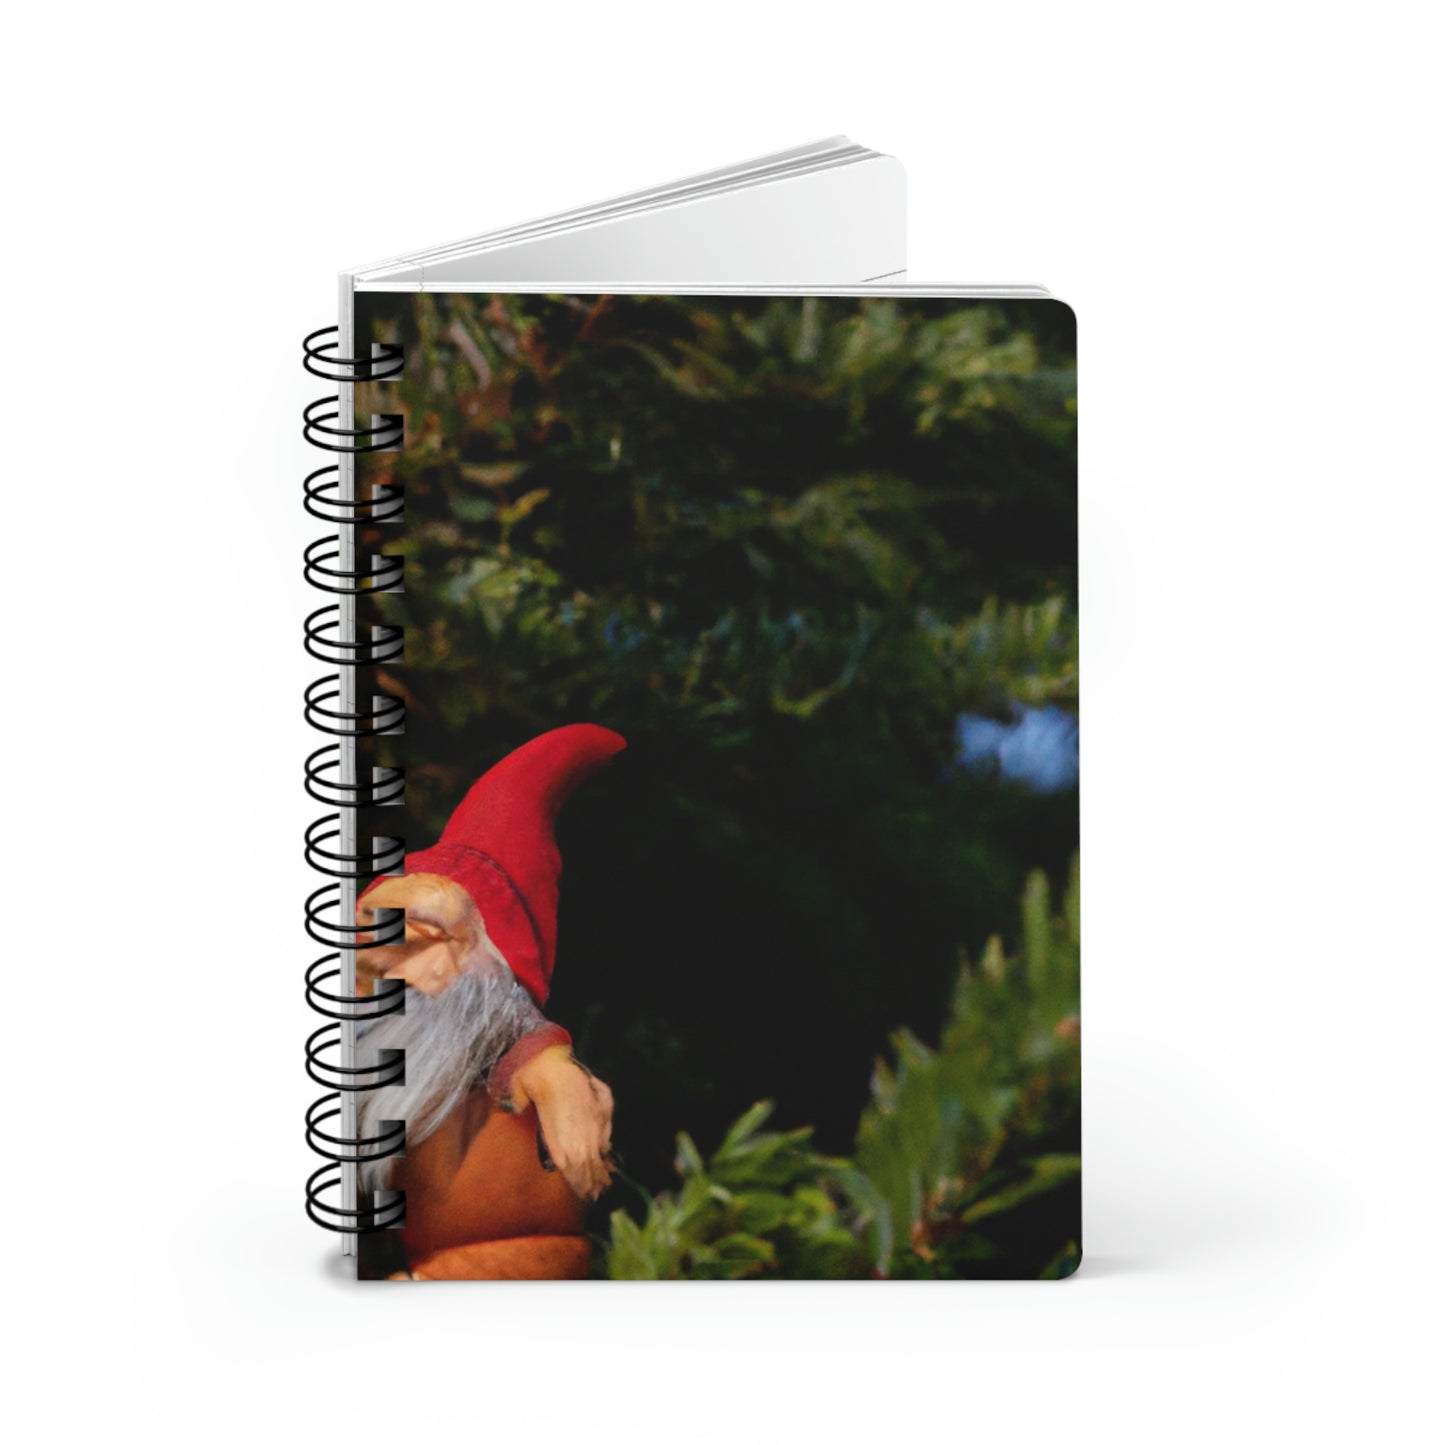 The Gnome's High-Rise Adventure - The Alien Cuaderno encuadernado en espiral